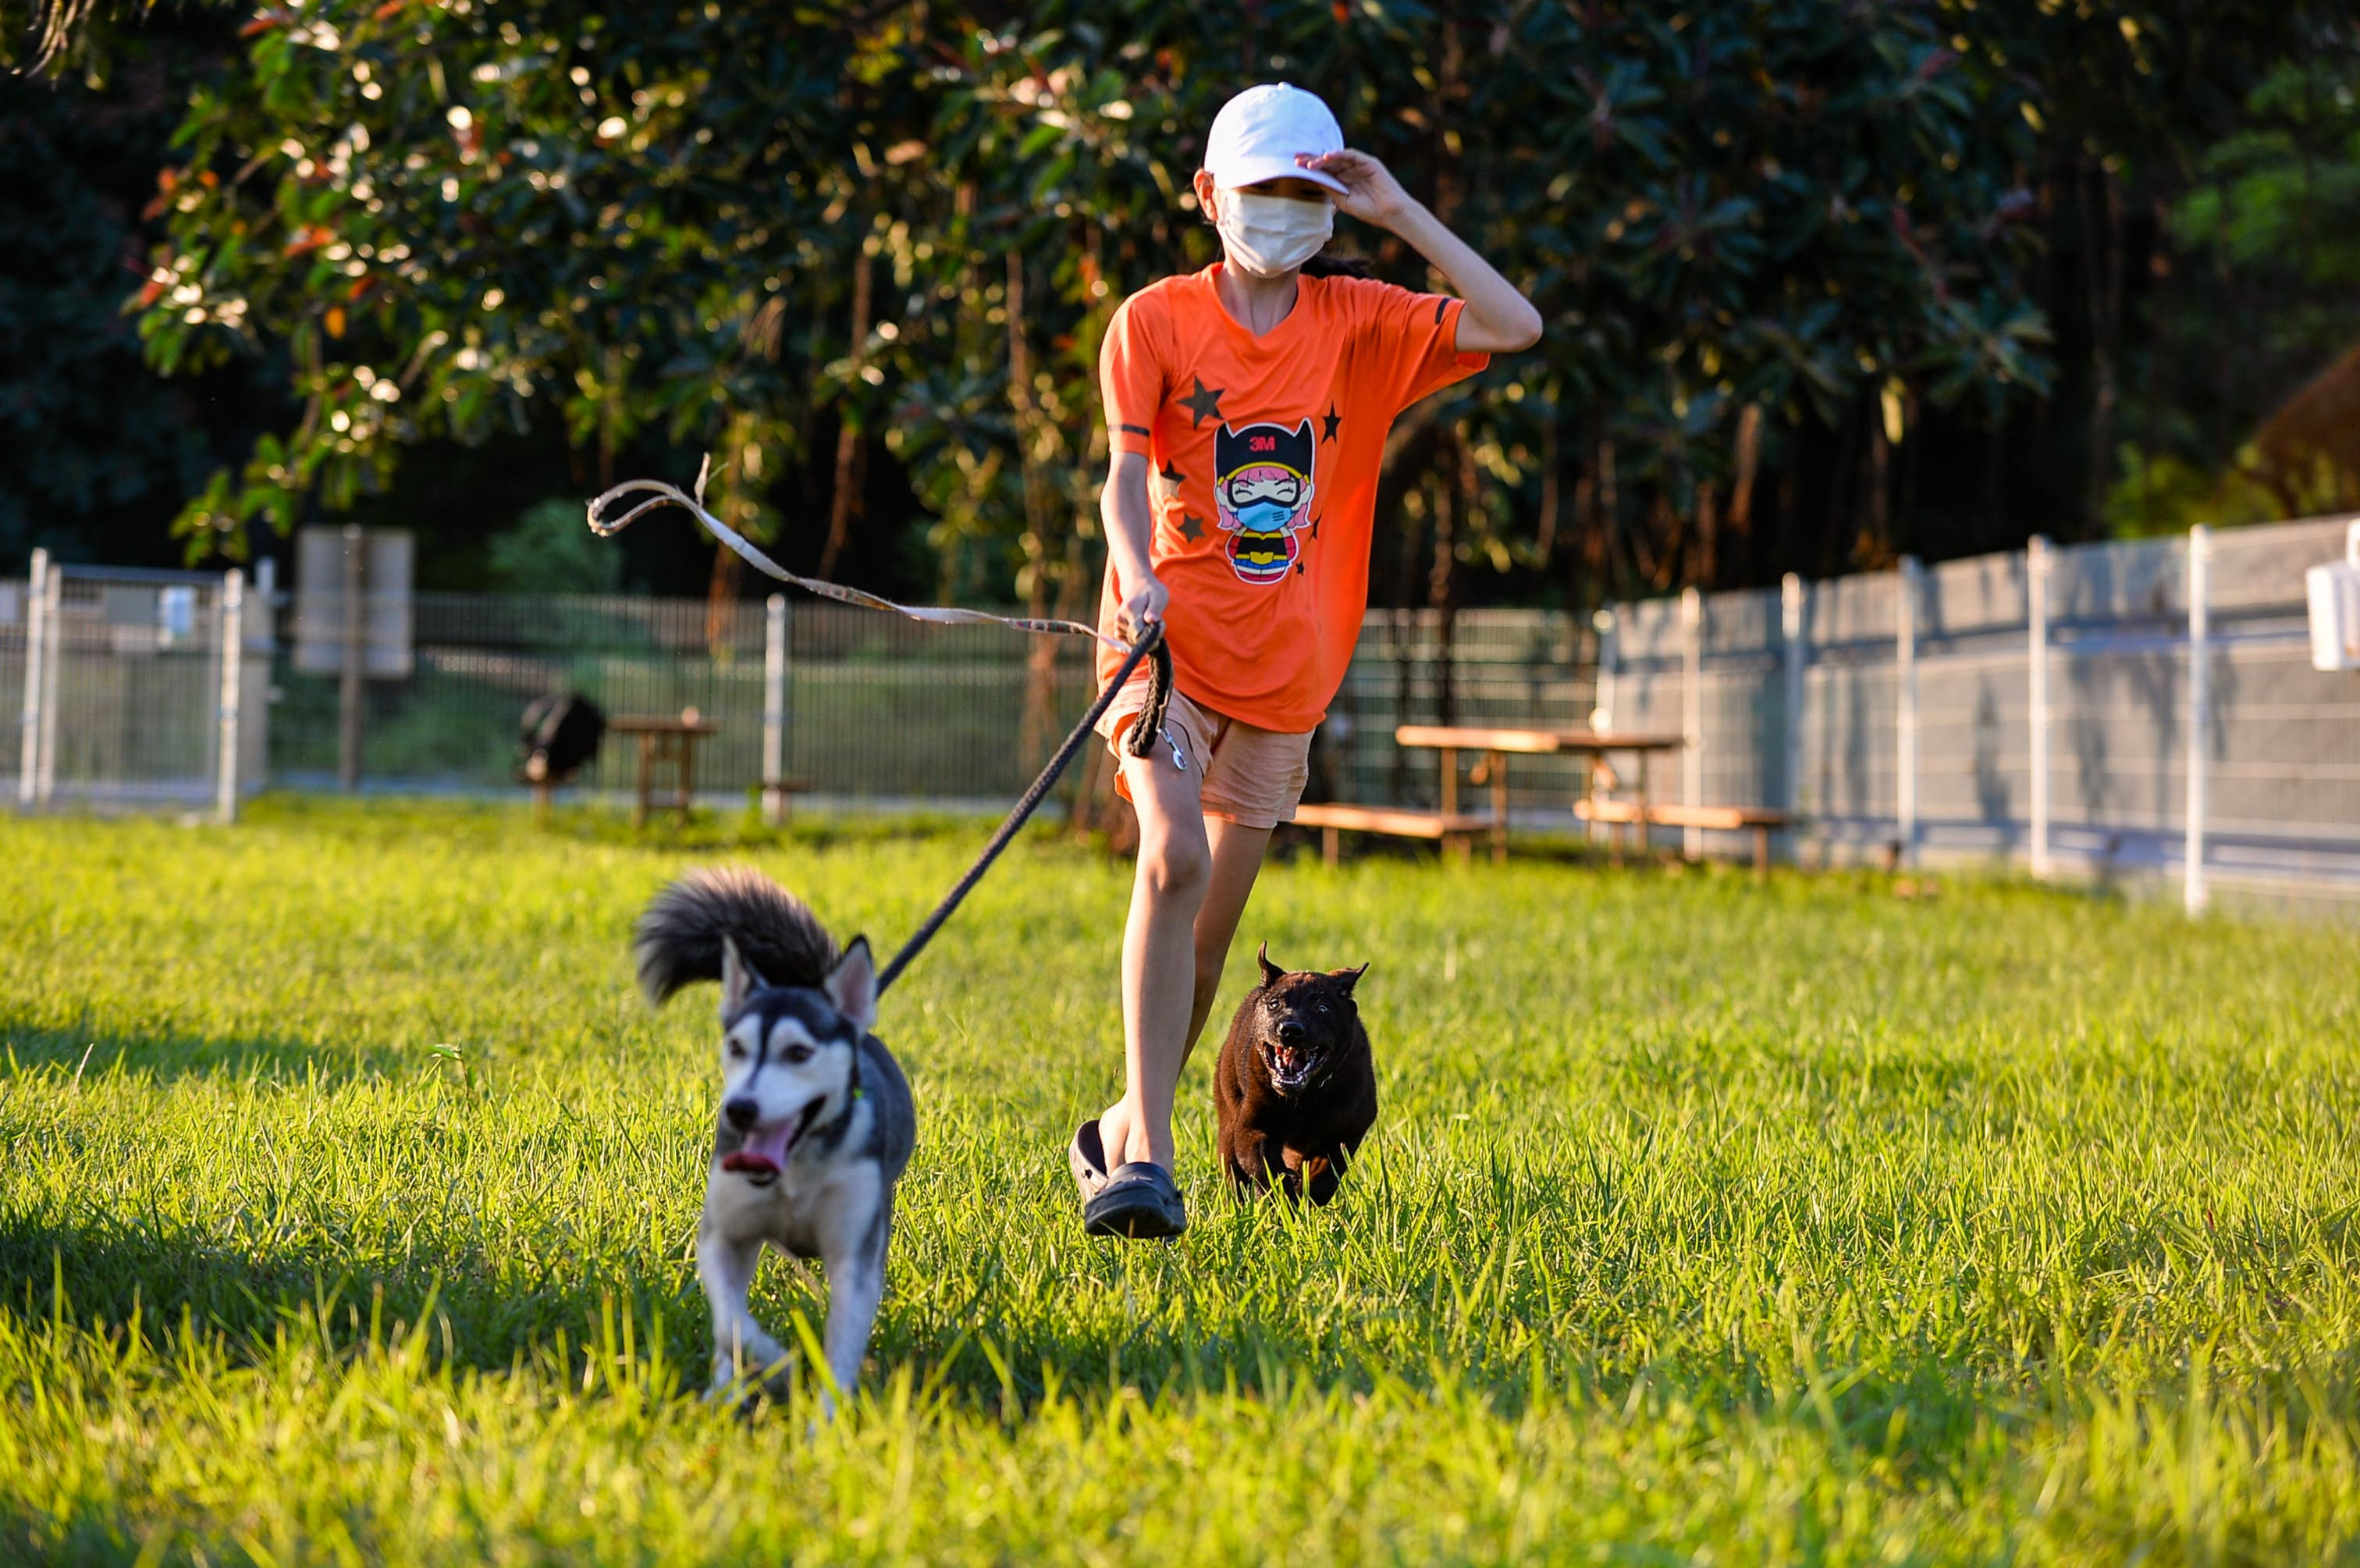 Bãi cỏ cũng được cắt ngắn để phù hợp cho chó chạy, nhảy. Đến công viên, người dắt chó theo cần phải tuân thủ một số quy định bắt buộc như luôn đi cạnh thú nuôi; trông chừng, tập trung vào thú nuôi; giữ chặt thú nuôi và rời khỏi khu vực ngay khi thú nuôi trở nên hung dữ.